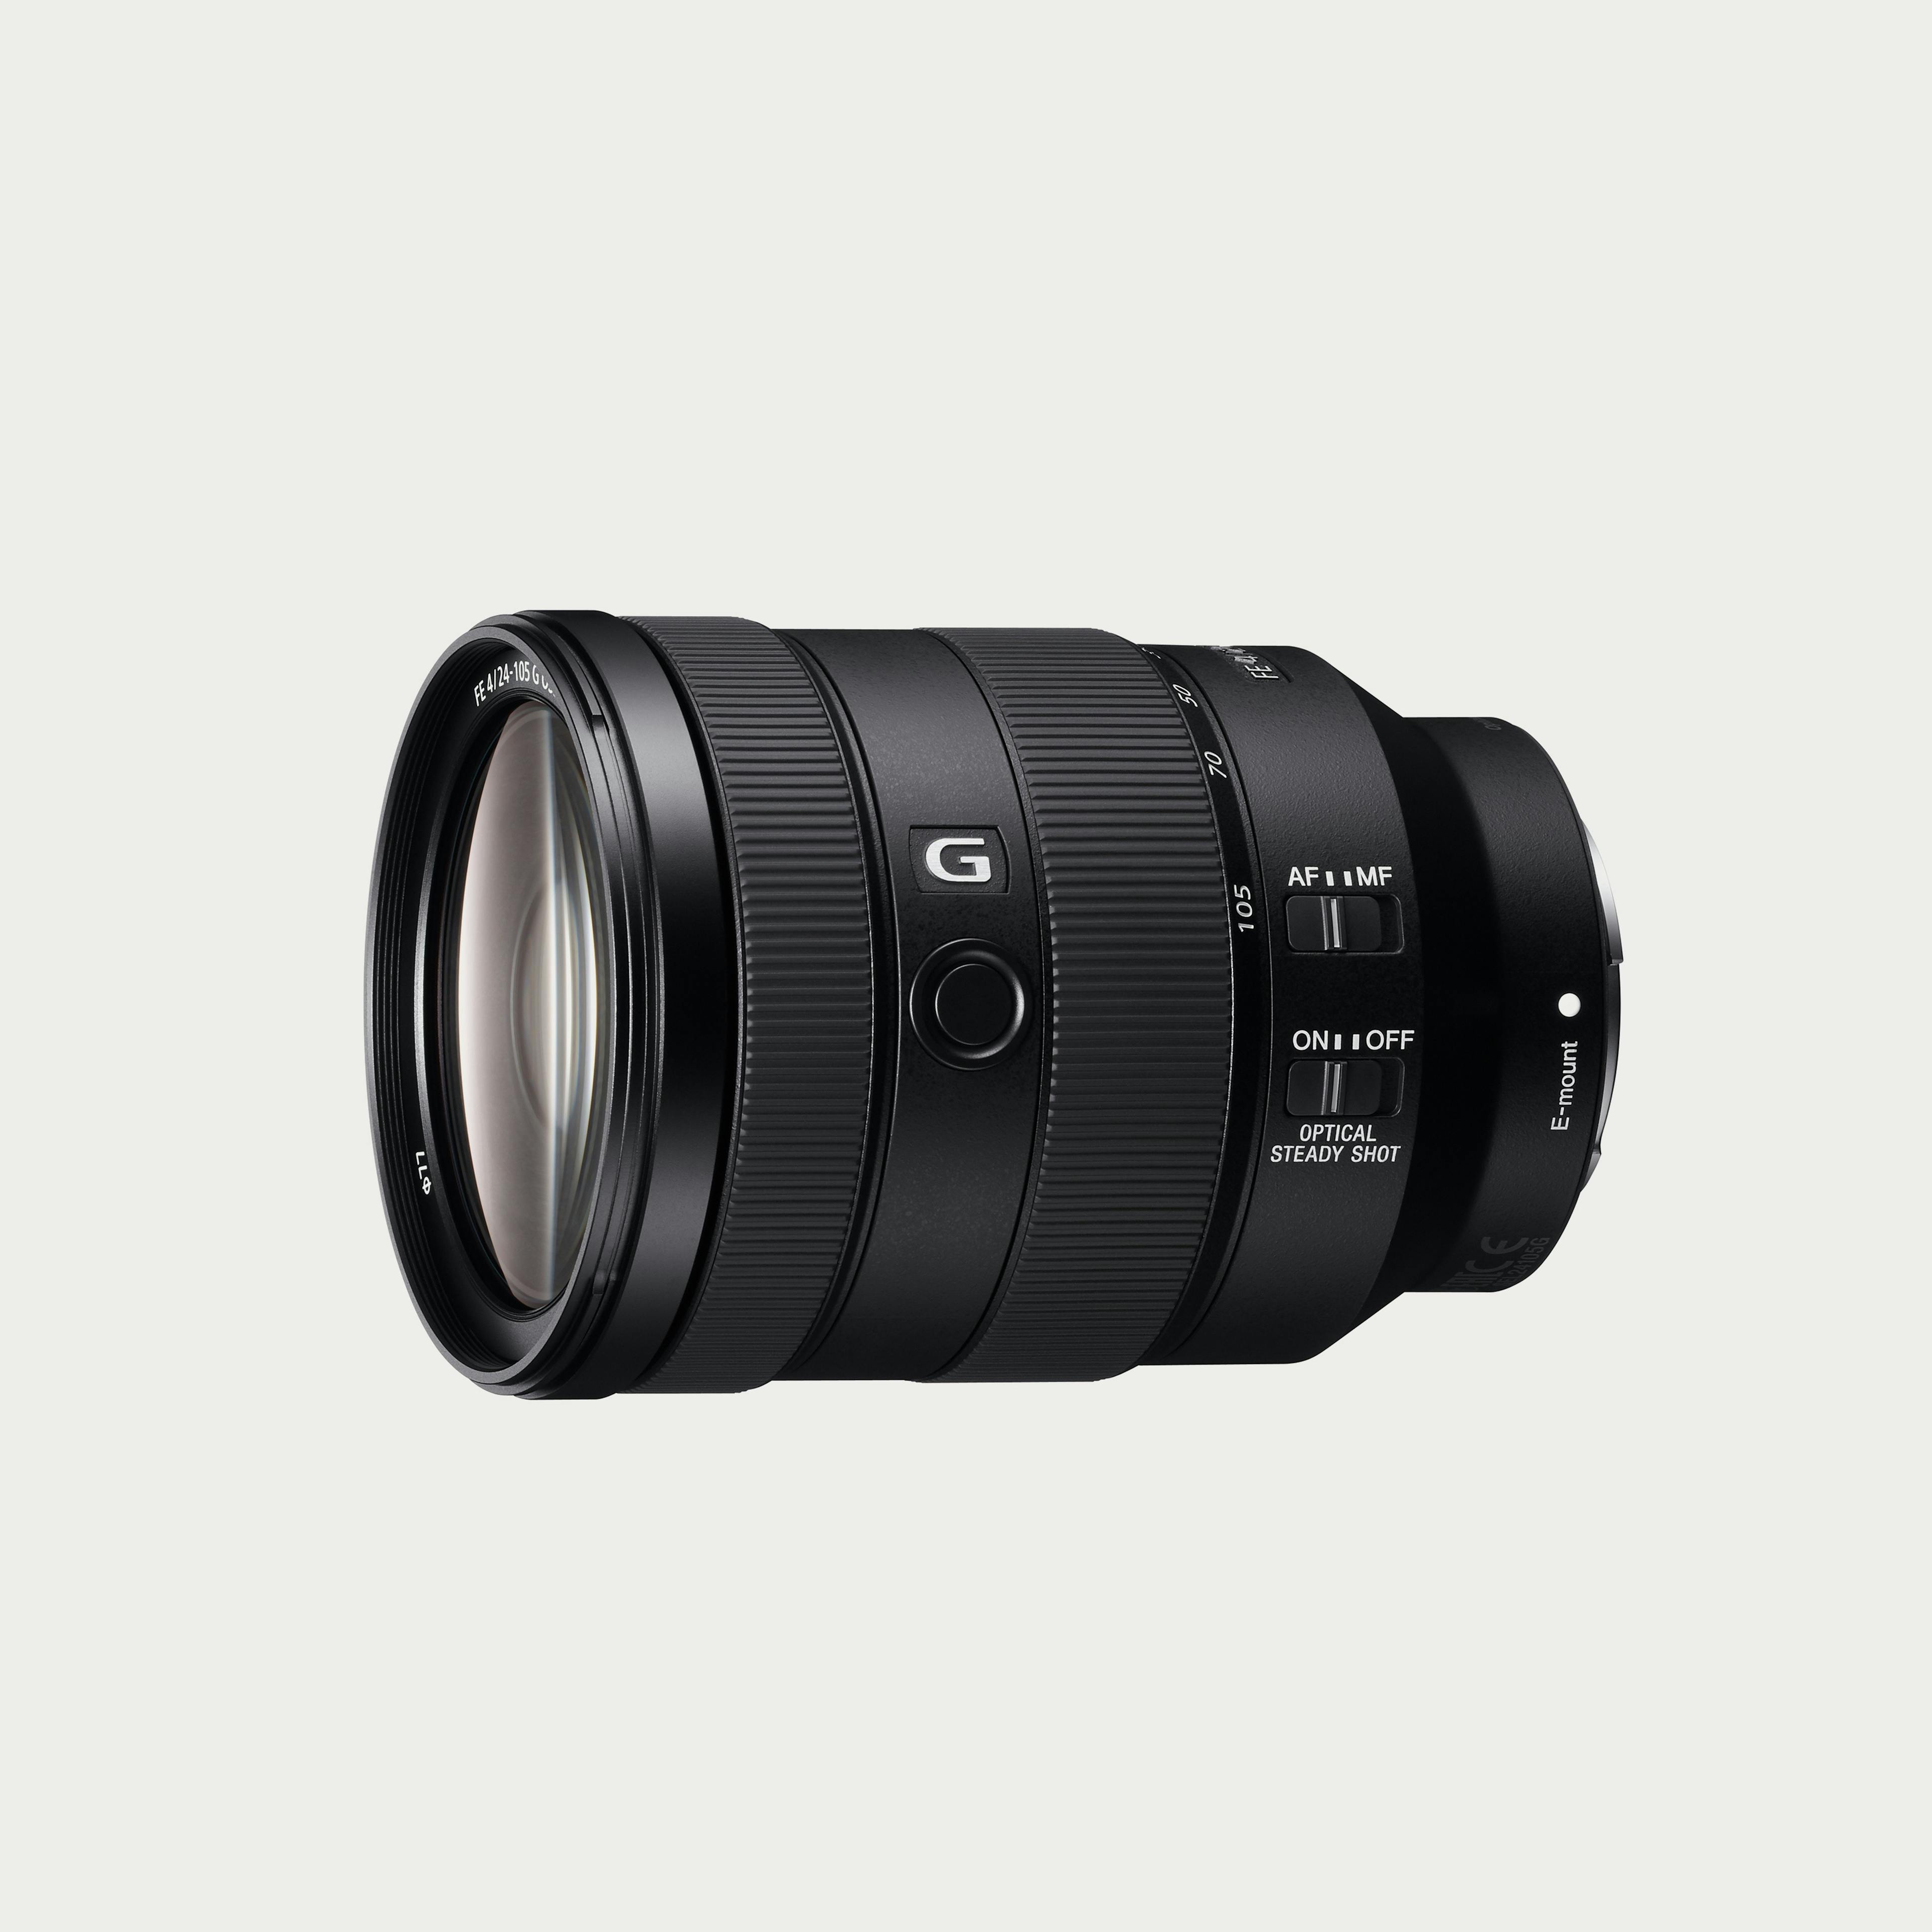 FE 24-105mm f/4 G OSS Lens